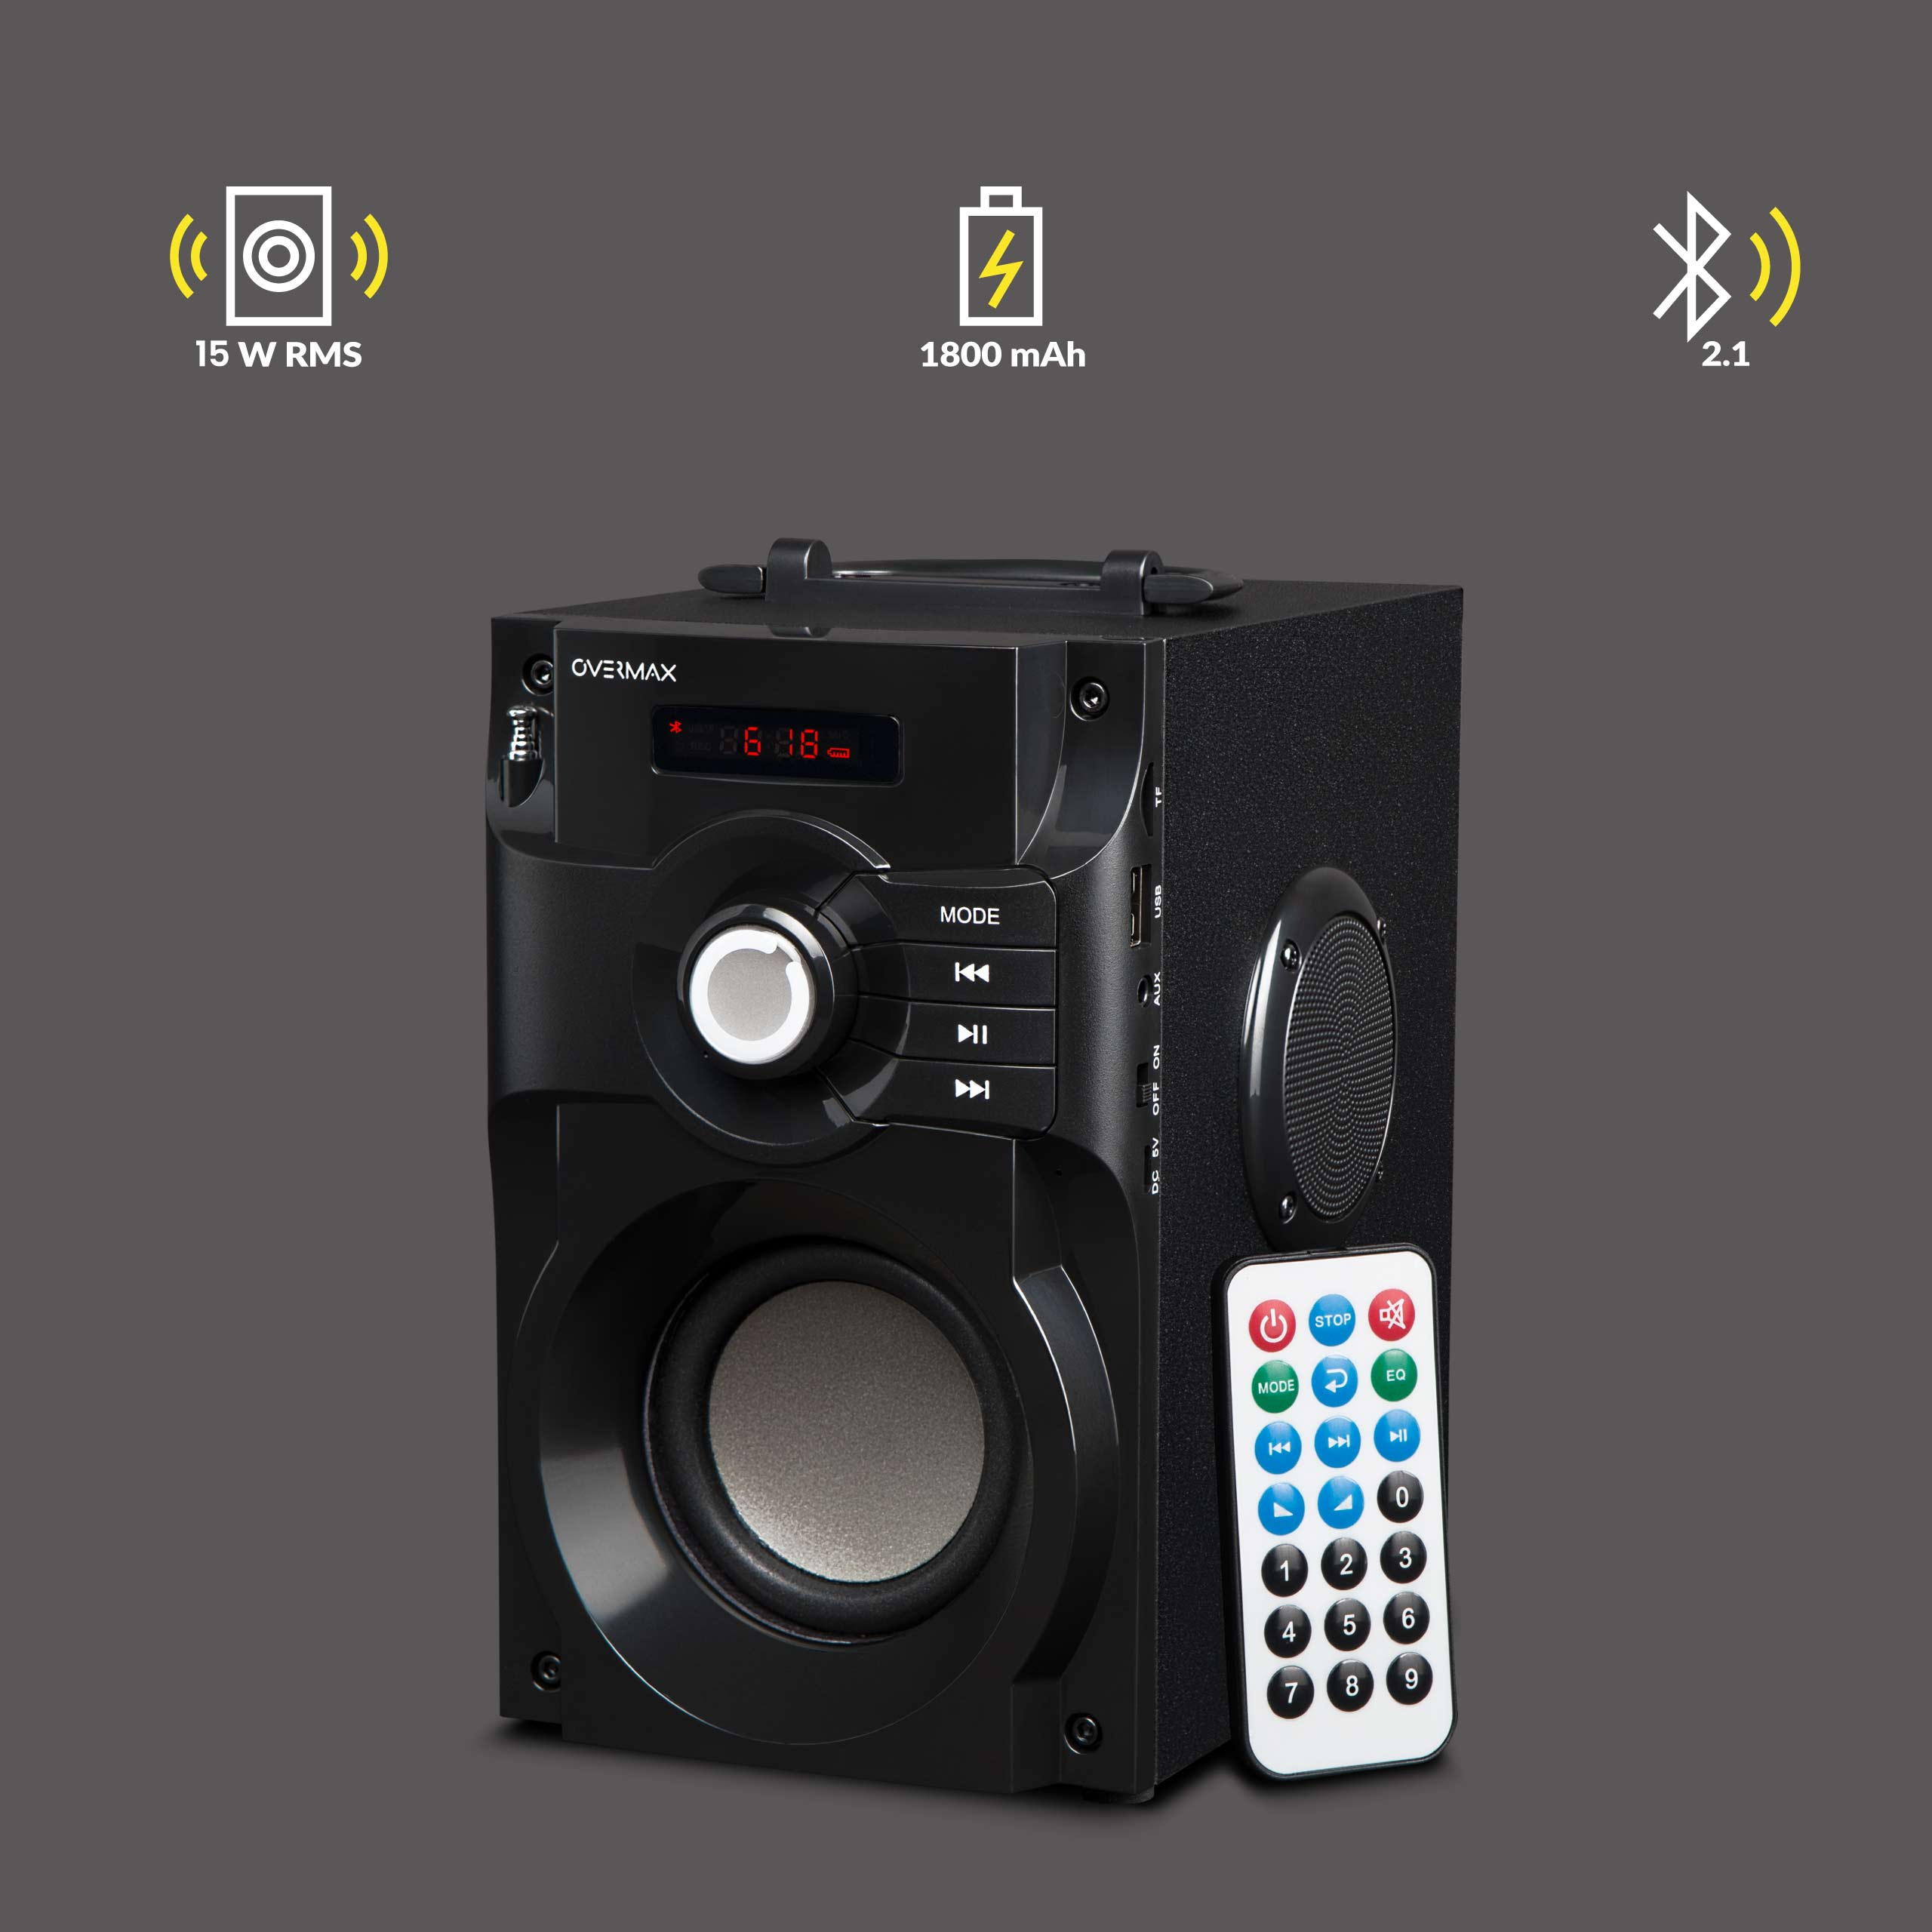 Lautsprecher, OVERMAX SOUNBEAT Bluetooth 2.0 Schwarz